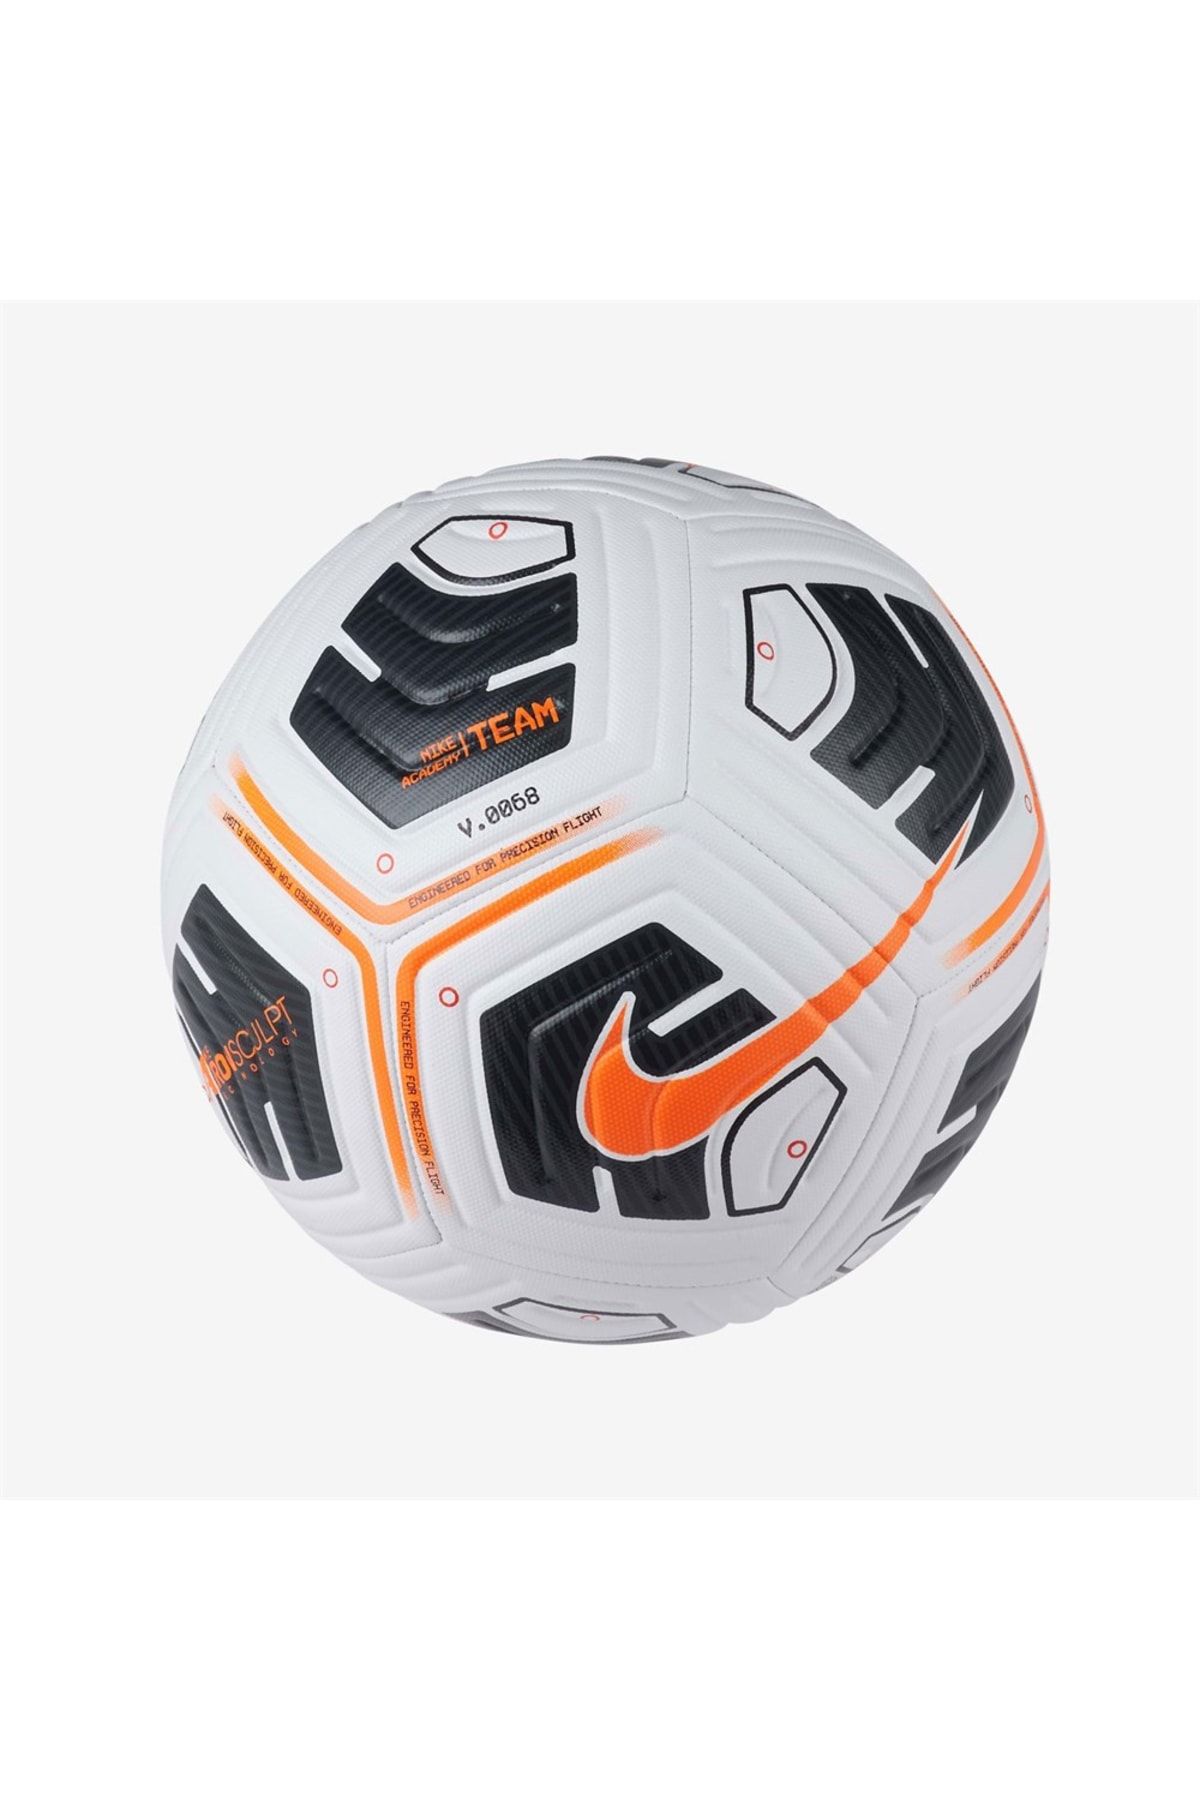 Nike Premier League 2020/21 Flight Official Match Ball, 45% OFF